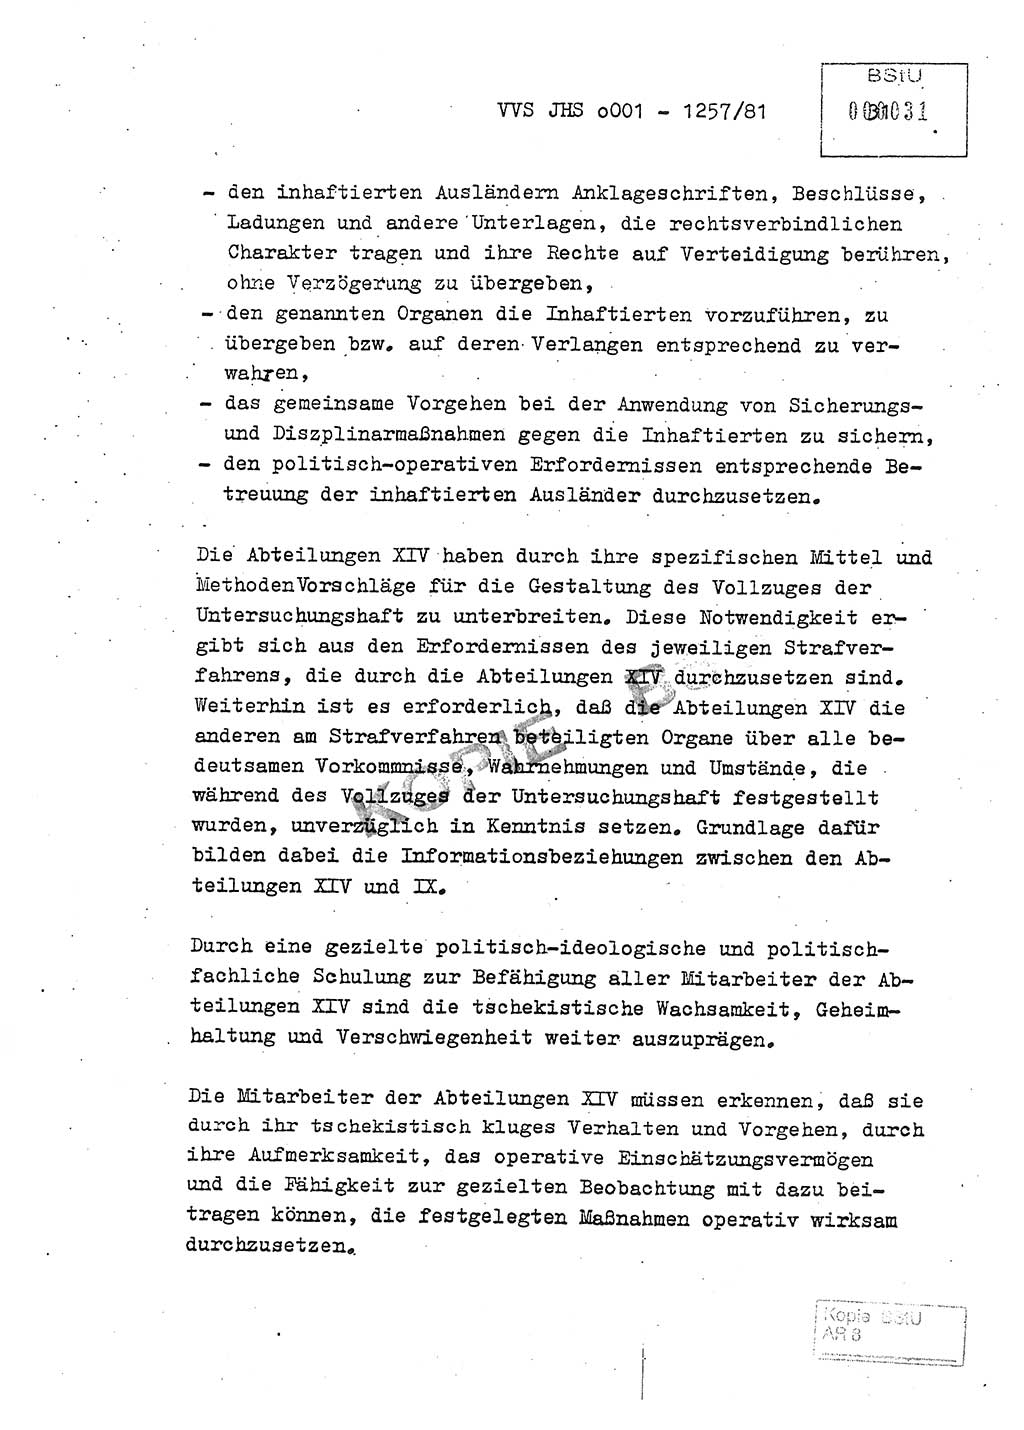 Fachschulabschlußarbeit Unterleutnant Dieter Möller (BV Rst. Abt. ⅩⅣ), Ministerium für Staatssicherheit (MfS) [Deutsche Demokratische Republik (DDR)], Juristische Hochschule (JHS), Vertrauliche Verschlußsache (VVS) o001-1257/81, Potsdam 1982, Seite 31 (FS-Abschl.-Arb. MfS DDR JHS VVS o001-1257/81 1982, S. 31)